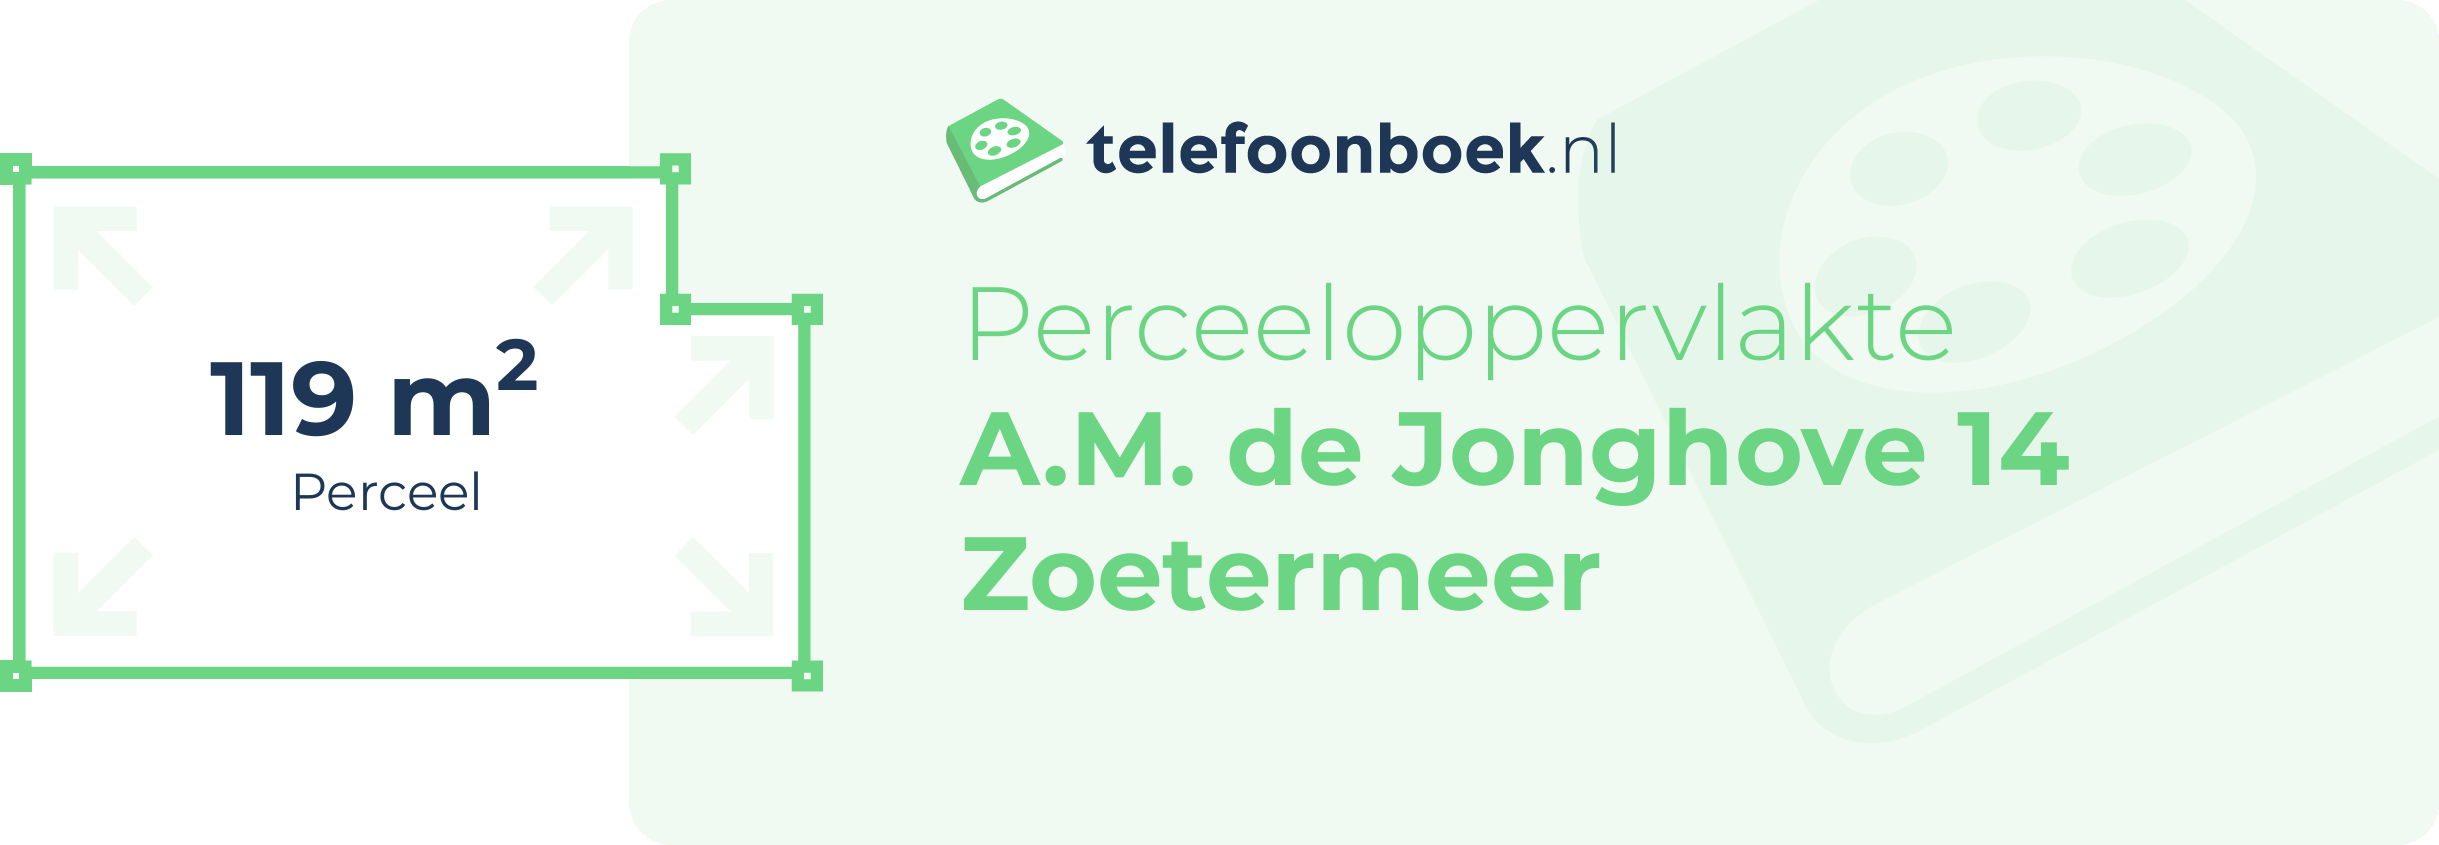 Perceeloppervlakte A.M. De Jonghove 14 Zoetermeer